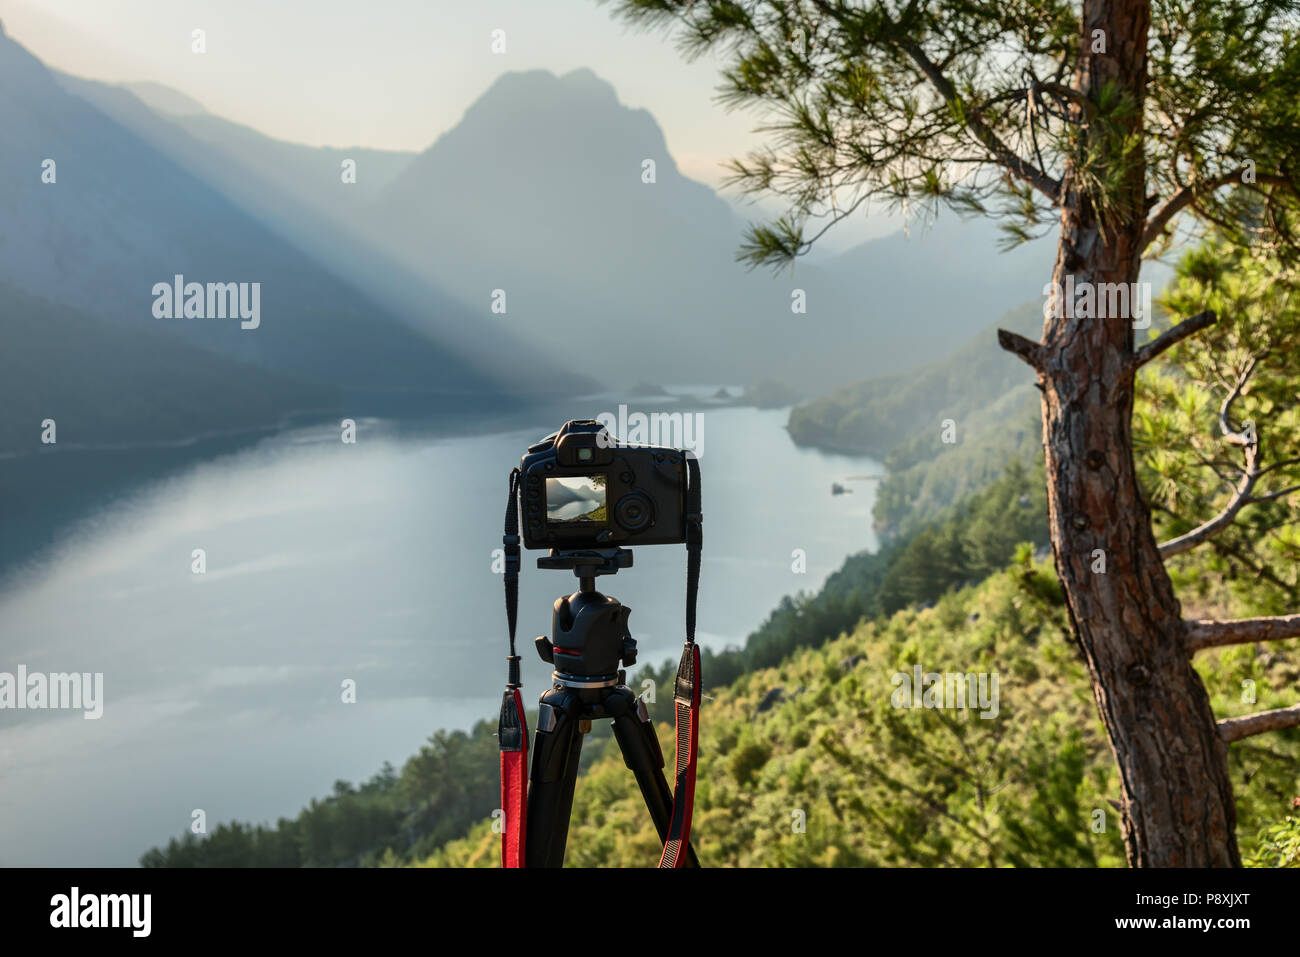 Fotografia di paesaggio fotocamera reflex digitale su un cavalletto in montagne di sunrise Foto Stock